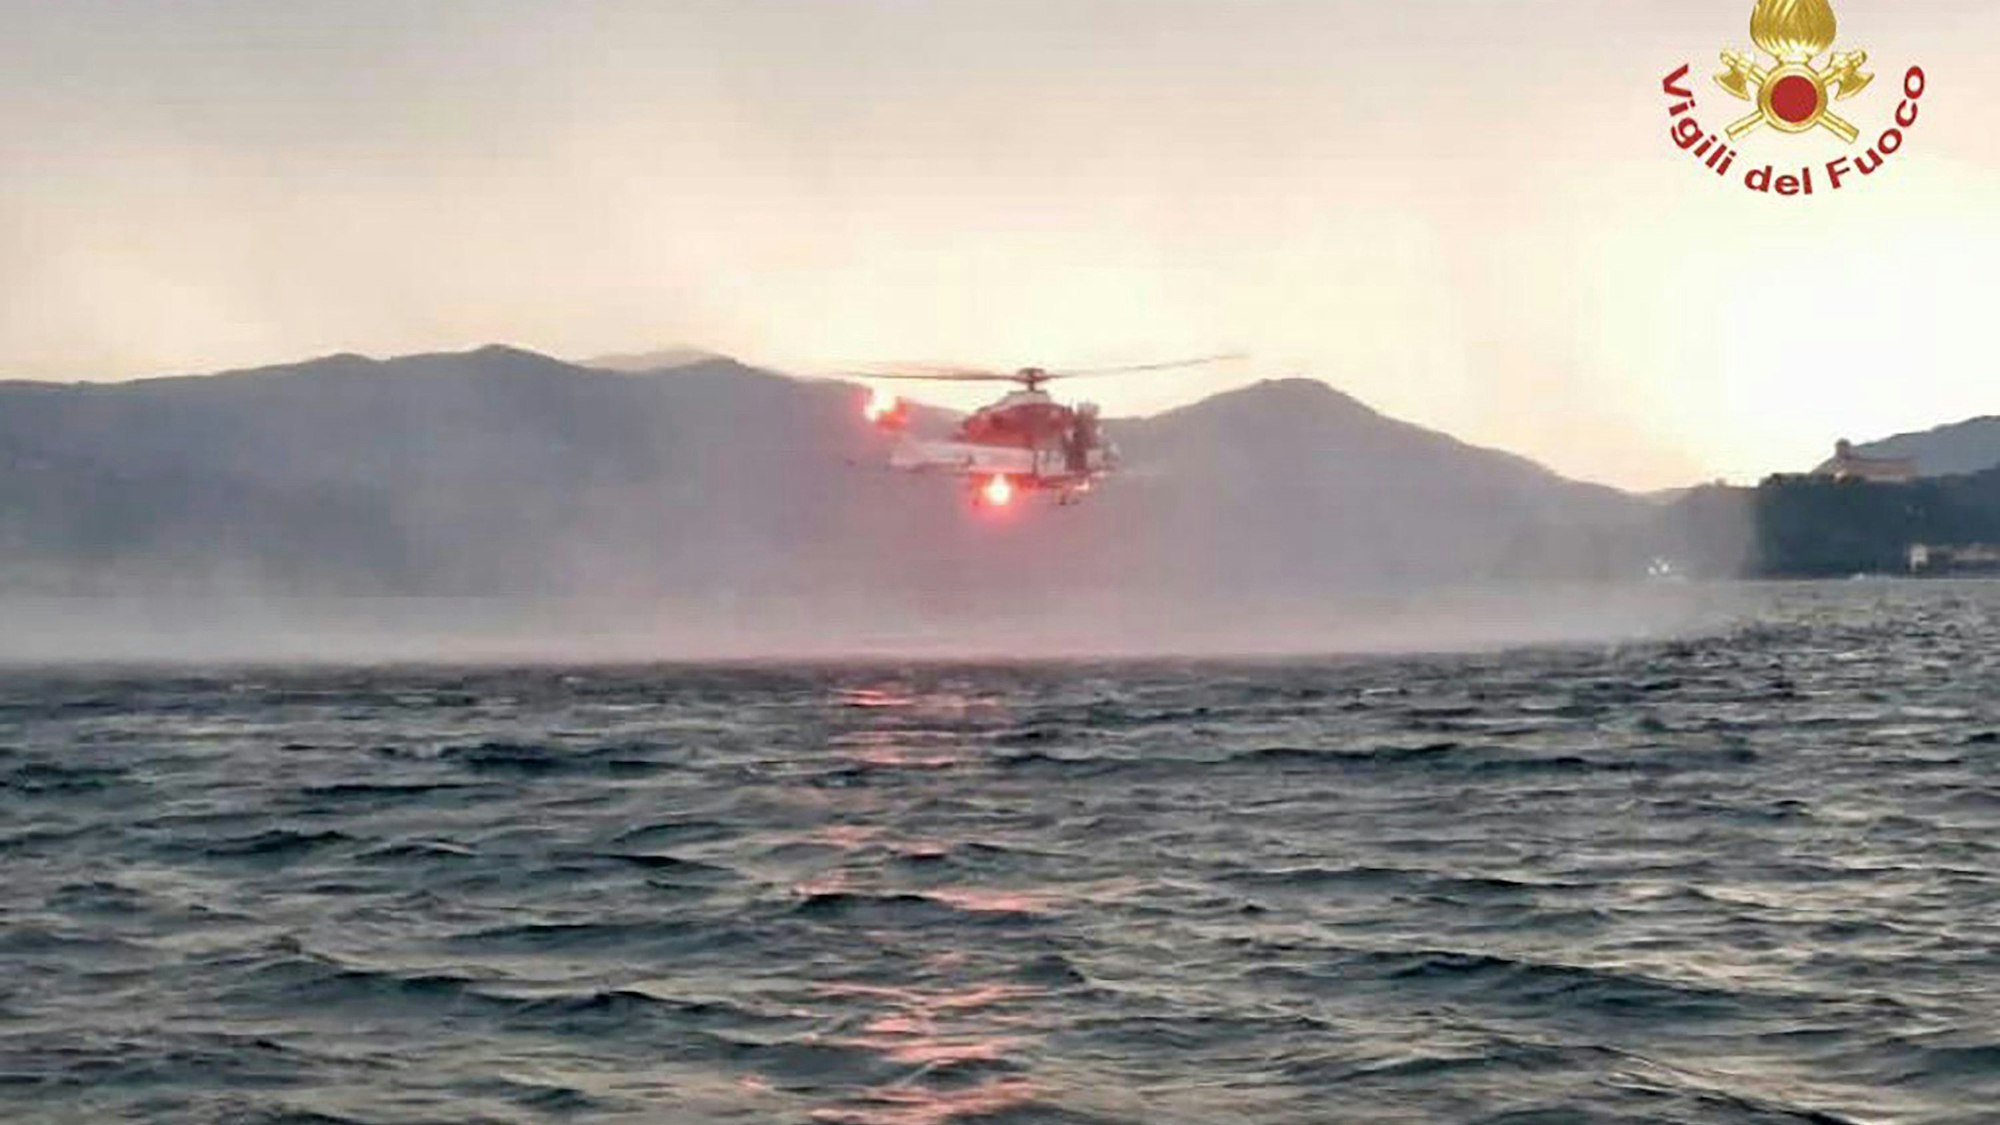 Dieses von der italienischen Feuerwehr veröffentlichten Bild zeigt einen Hubschrauber bei der Suche nach Vermissten, nachdem das Touristen-Boot in einem Sturm auf dem italienischen Lago Maggiore gekentert war.